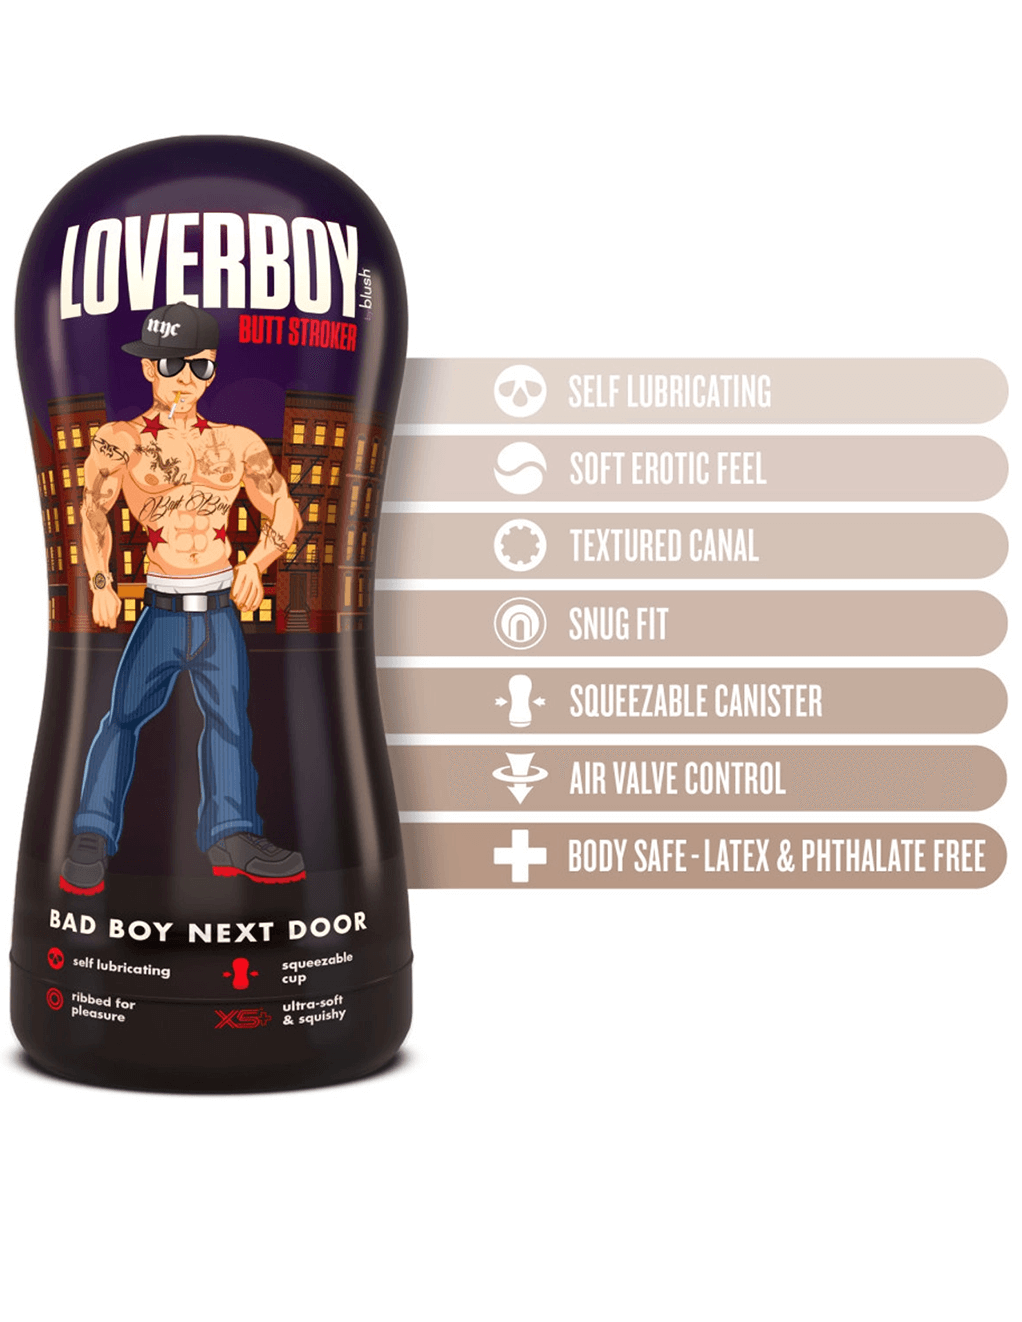 Loverboy Bad Boy Next Door Self Lubricating Stroker - Specs